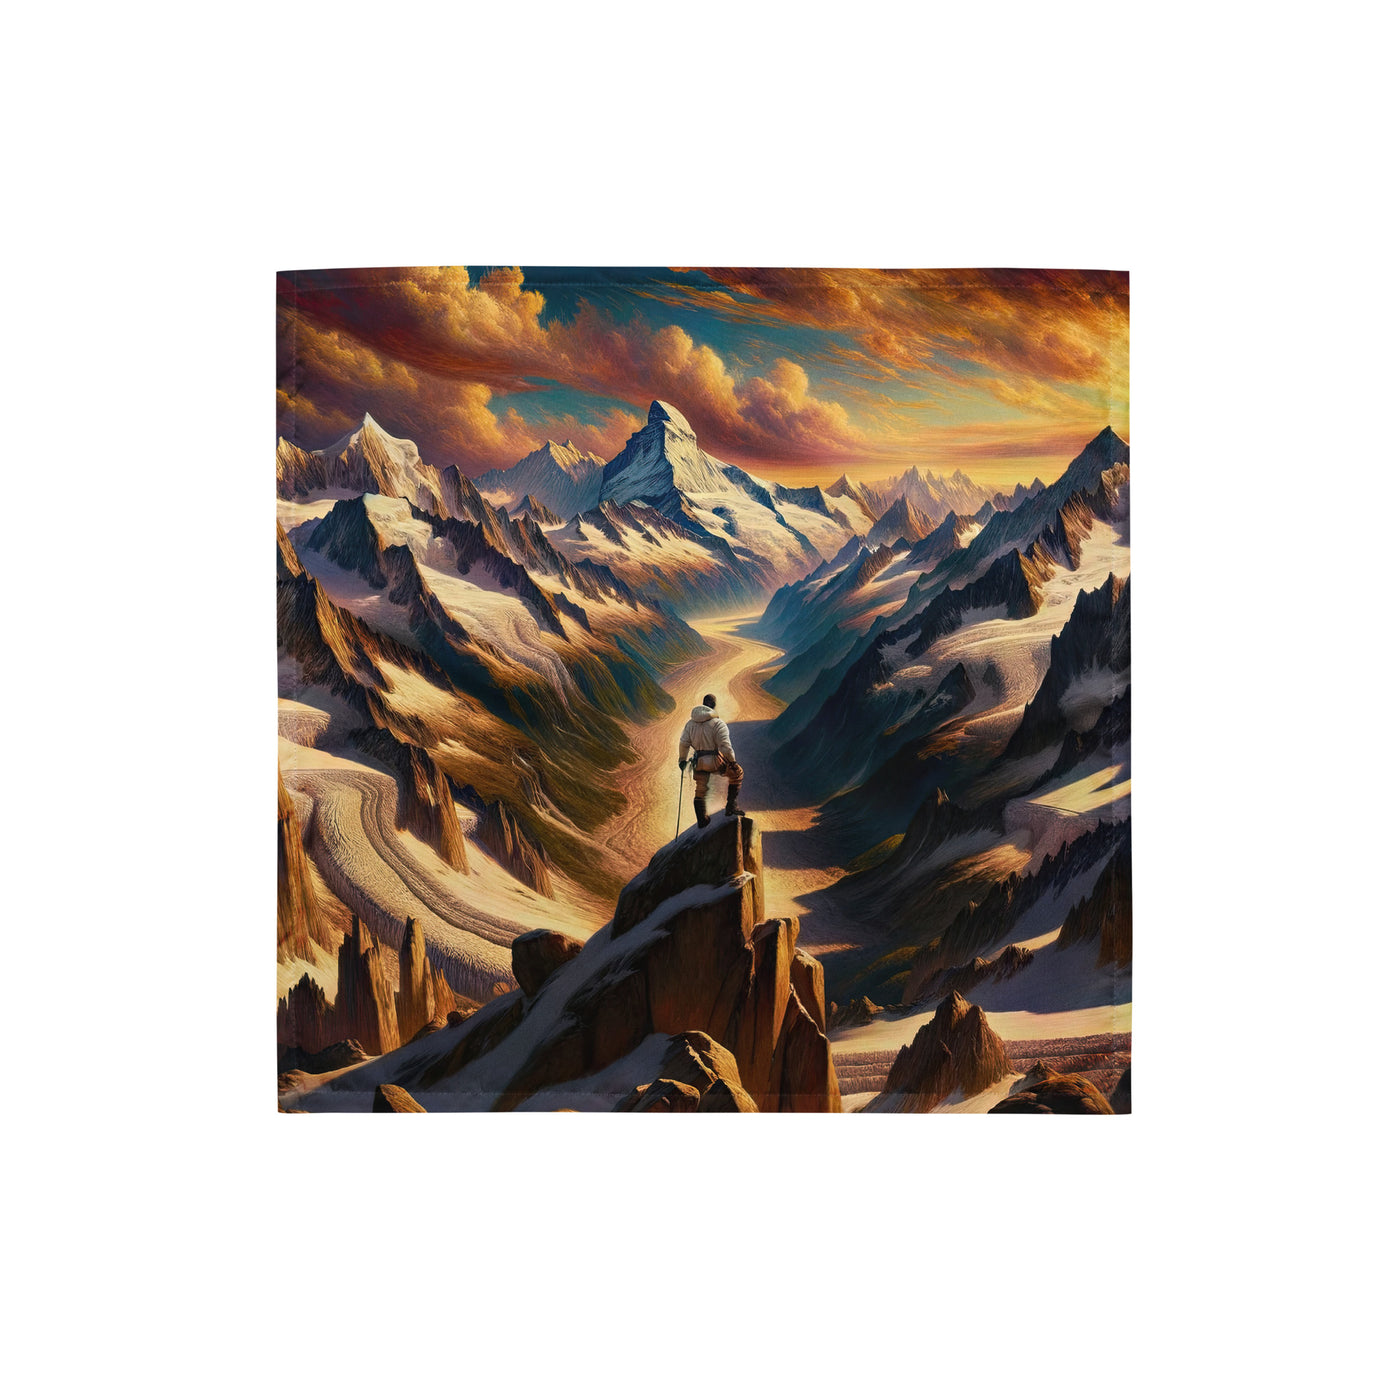 Ölgemälde eines Wanderers auf einem Hügel mit Panoramablick auf schneebedeckte Alpen und goldenen Himmel - Bandana (All-Over Print) wandern xxx yyy zzz S